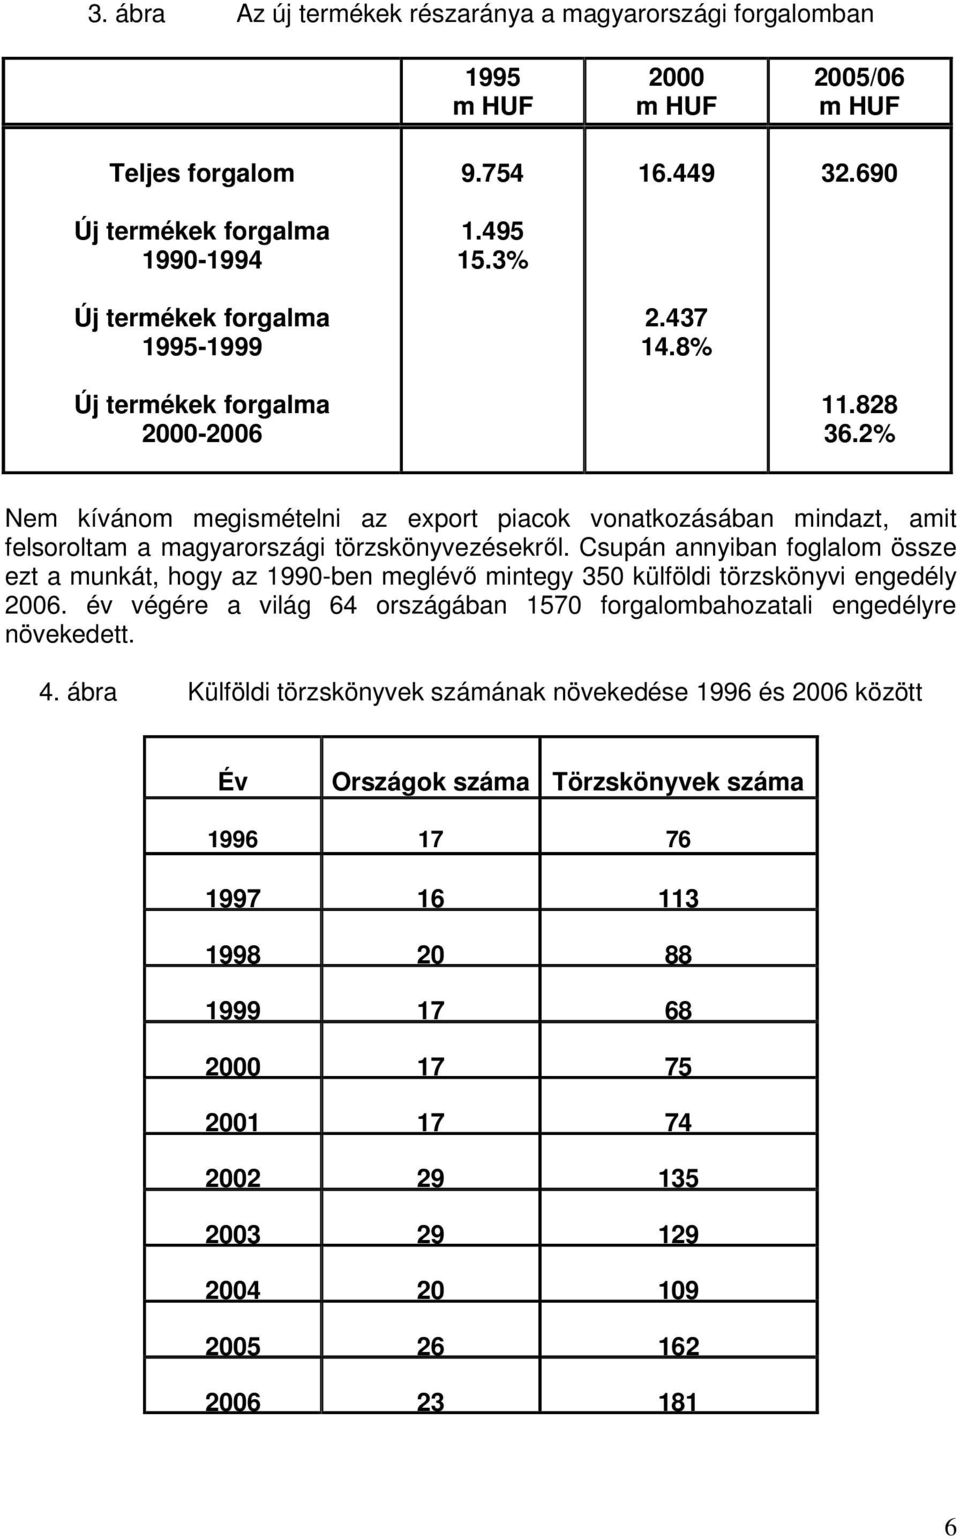 2% em kívánom megismételni az export piacok vonatkozásában mindazt, amit felsoroltam a magyarországi törzskönyvezésekről.